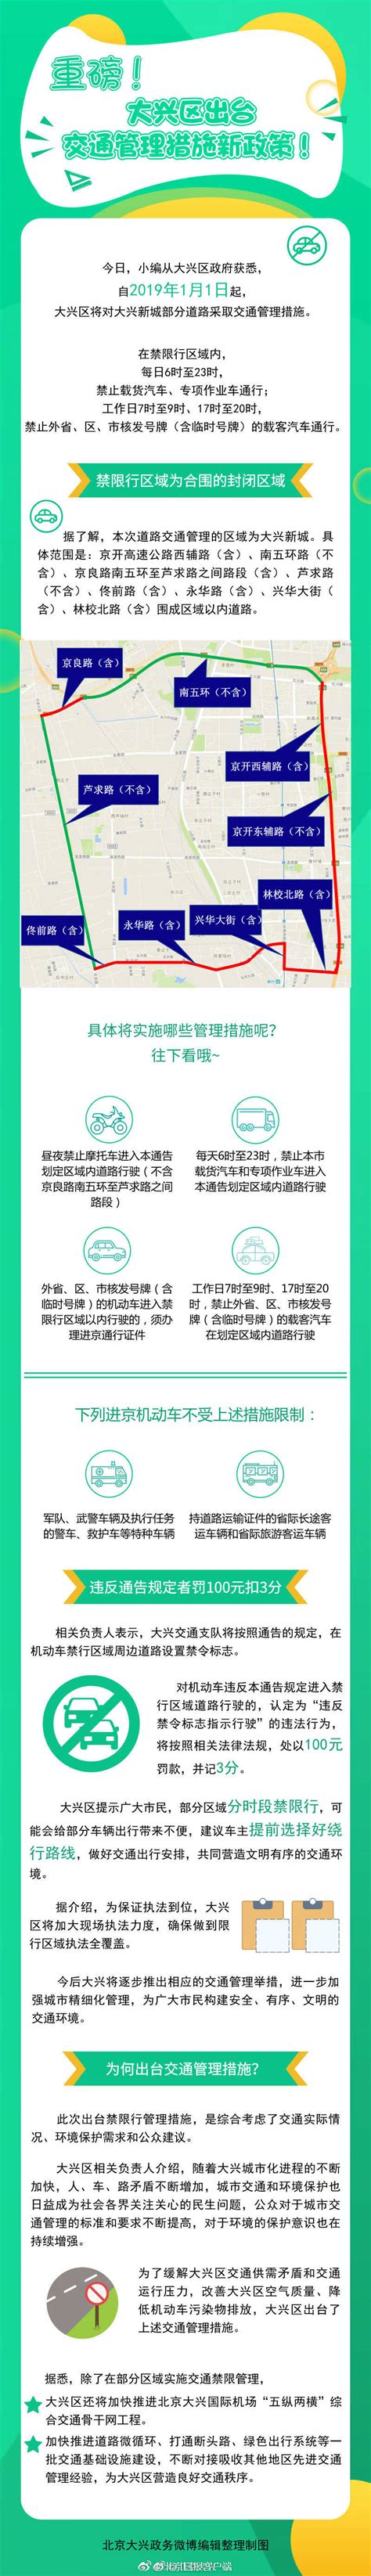 2019年1月1日起大兴禁限行新规详细解读- 北京本地宝